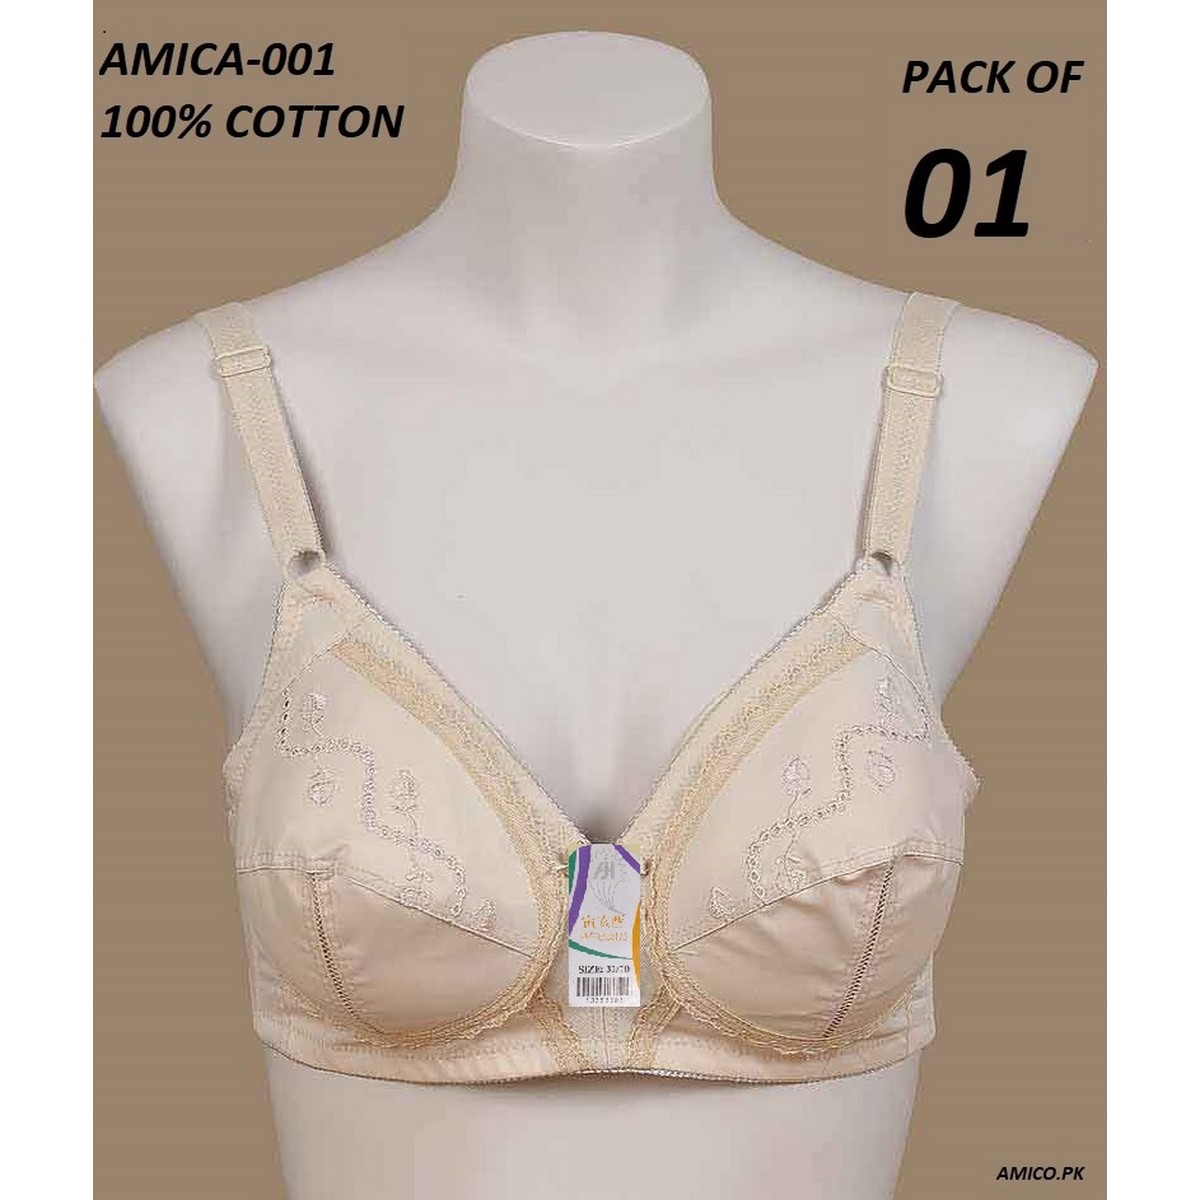 Amico Cotton Bra - Amica 001 - 100% Cotton Bra ( IFG Comfort 15